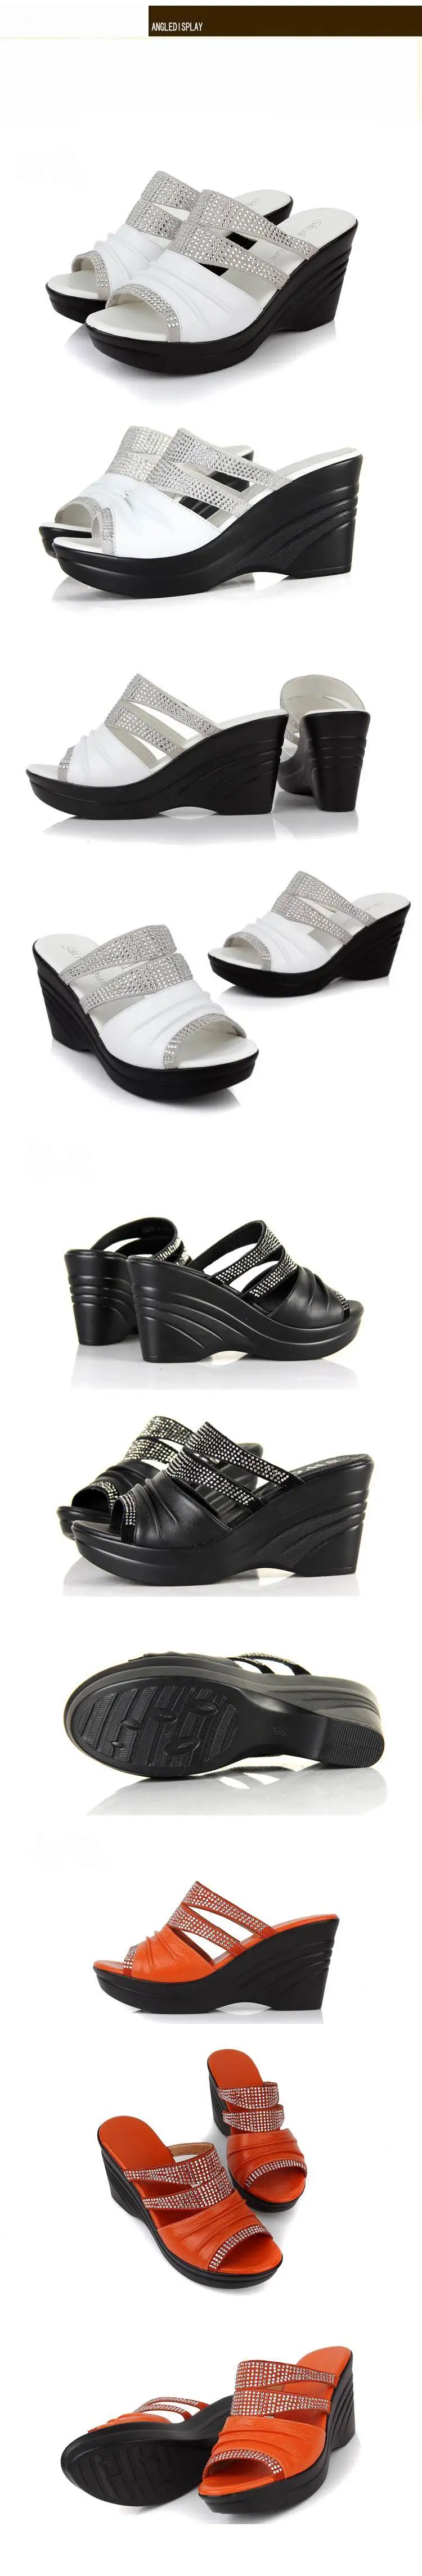 GKTINOO/брендовые сандалии; обувь из воловьей кожи со стразами; женские босоножки; шлепанцы; ; босоножки на танкетке с открытым носком; обувь для мам; модные сандалии